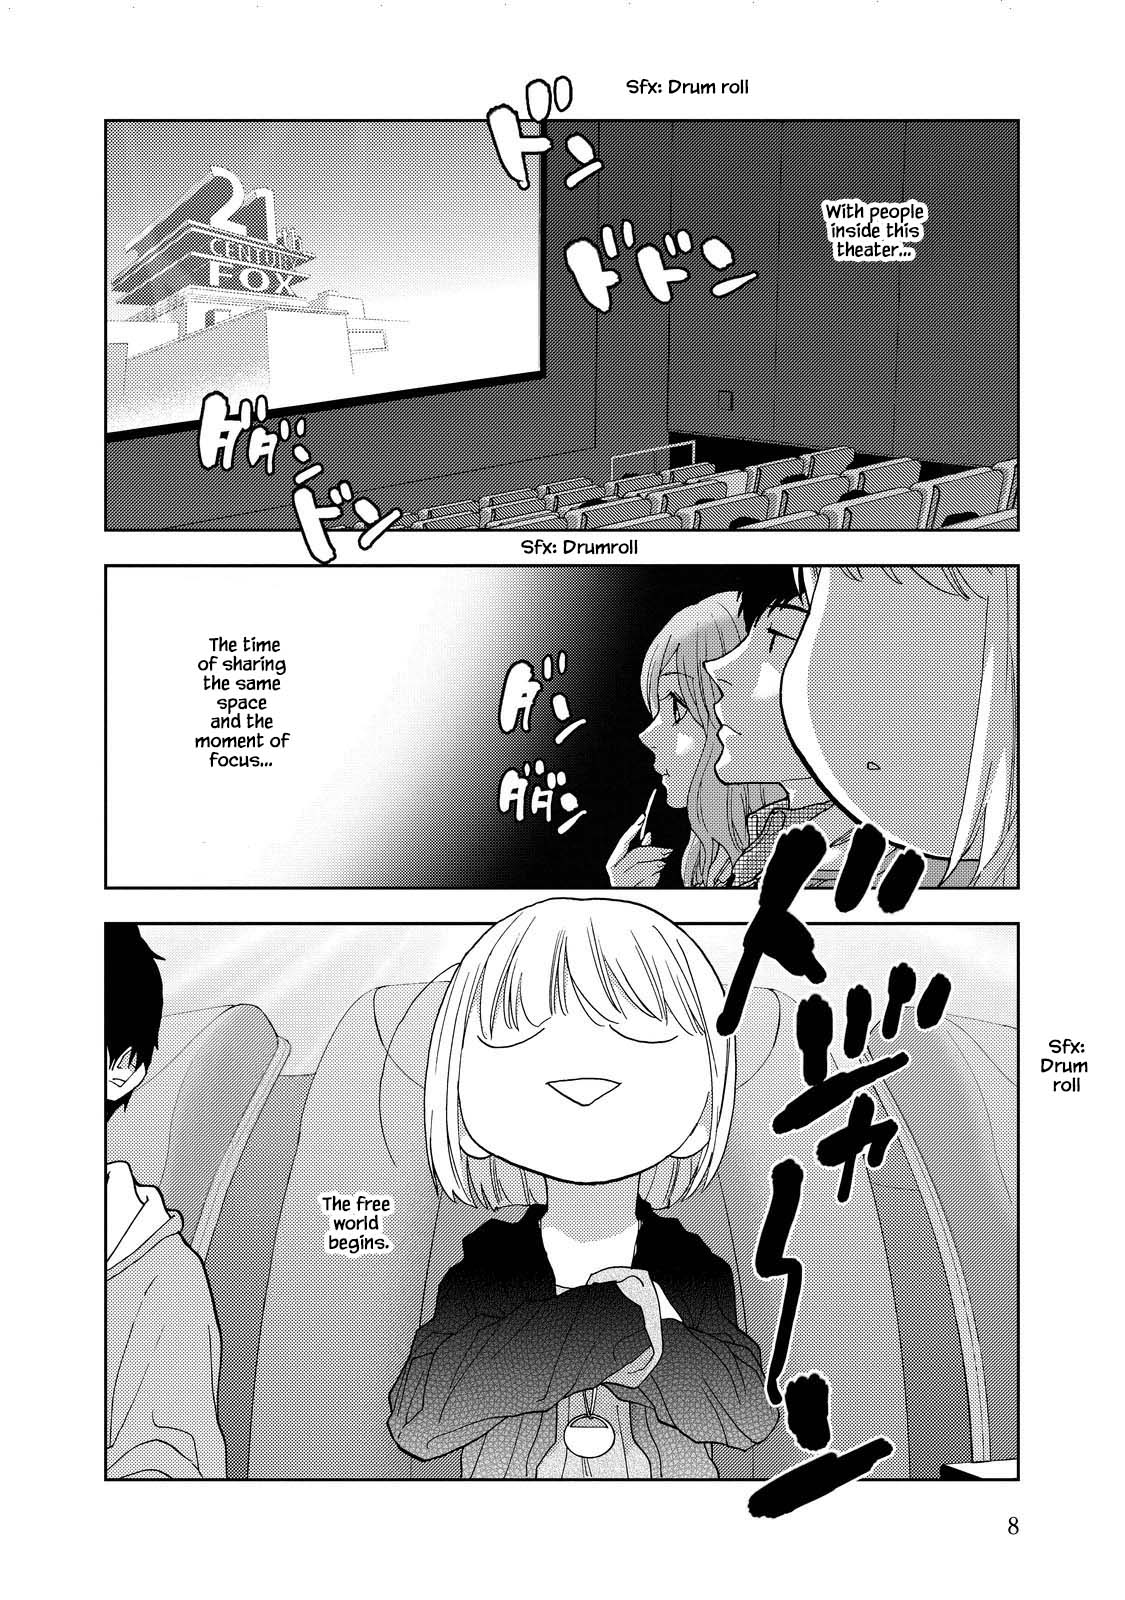 Takako-San - 14 page 11-19ee4fcb